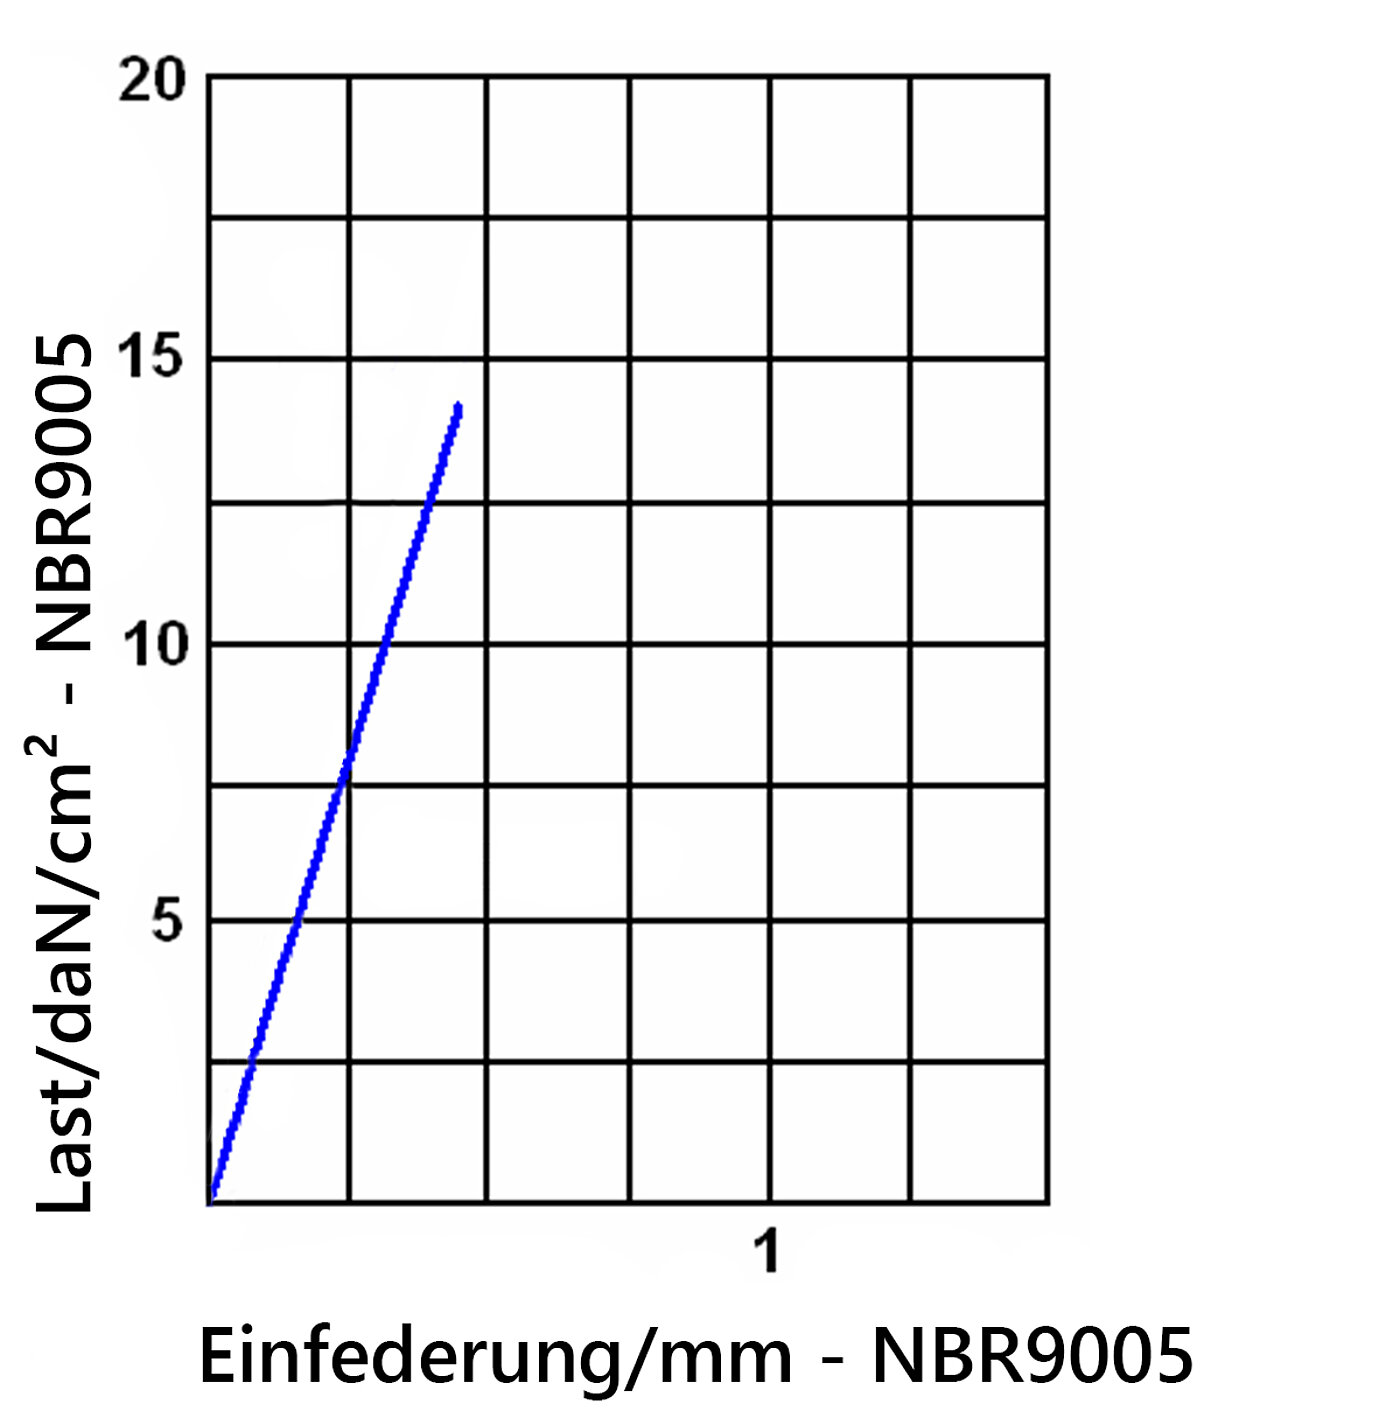 Diagramm der Einfederung der Elastomerplatte NBR9005 unter Last